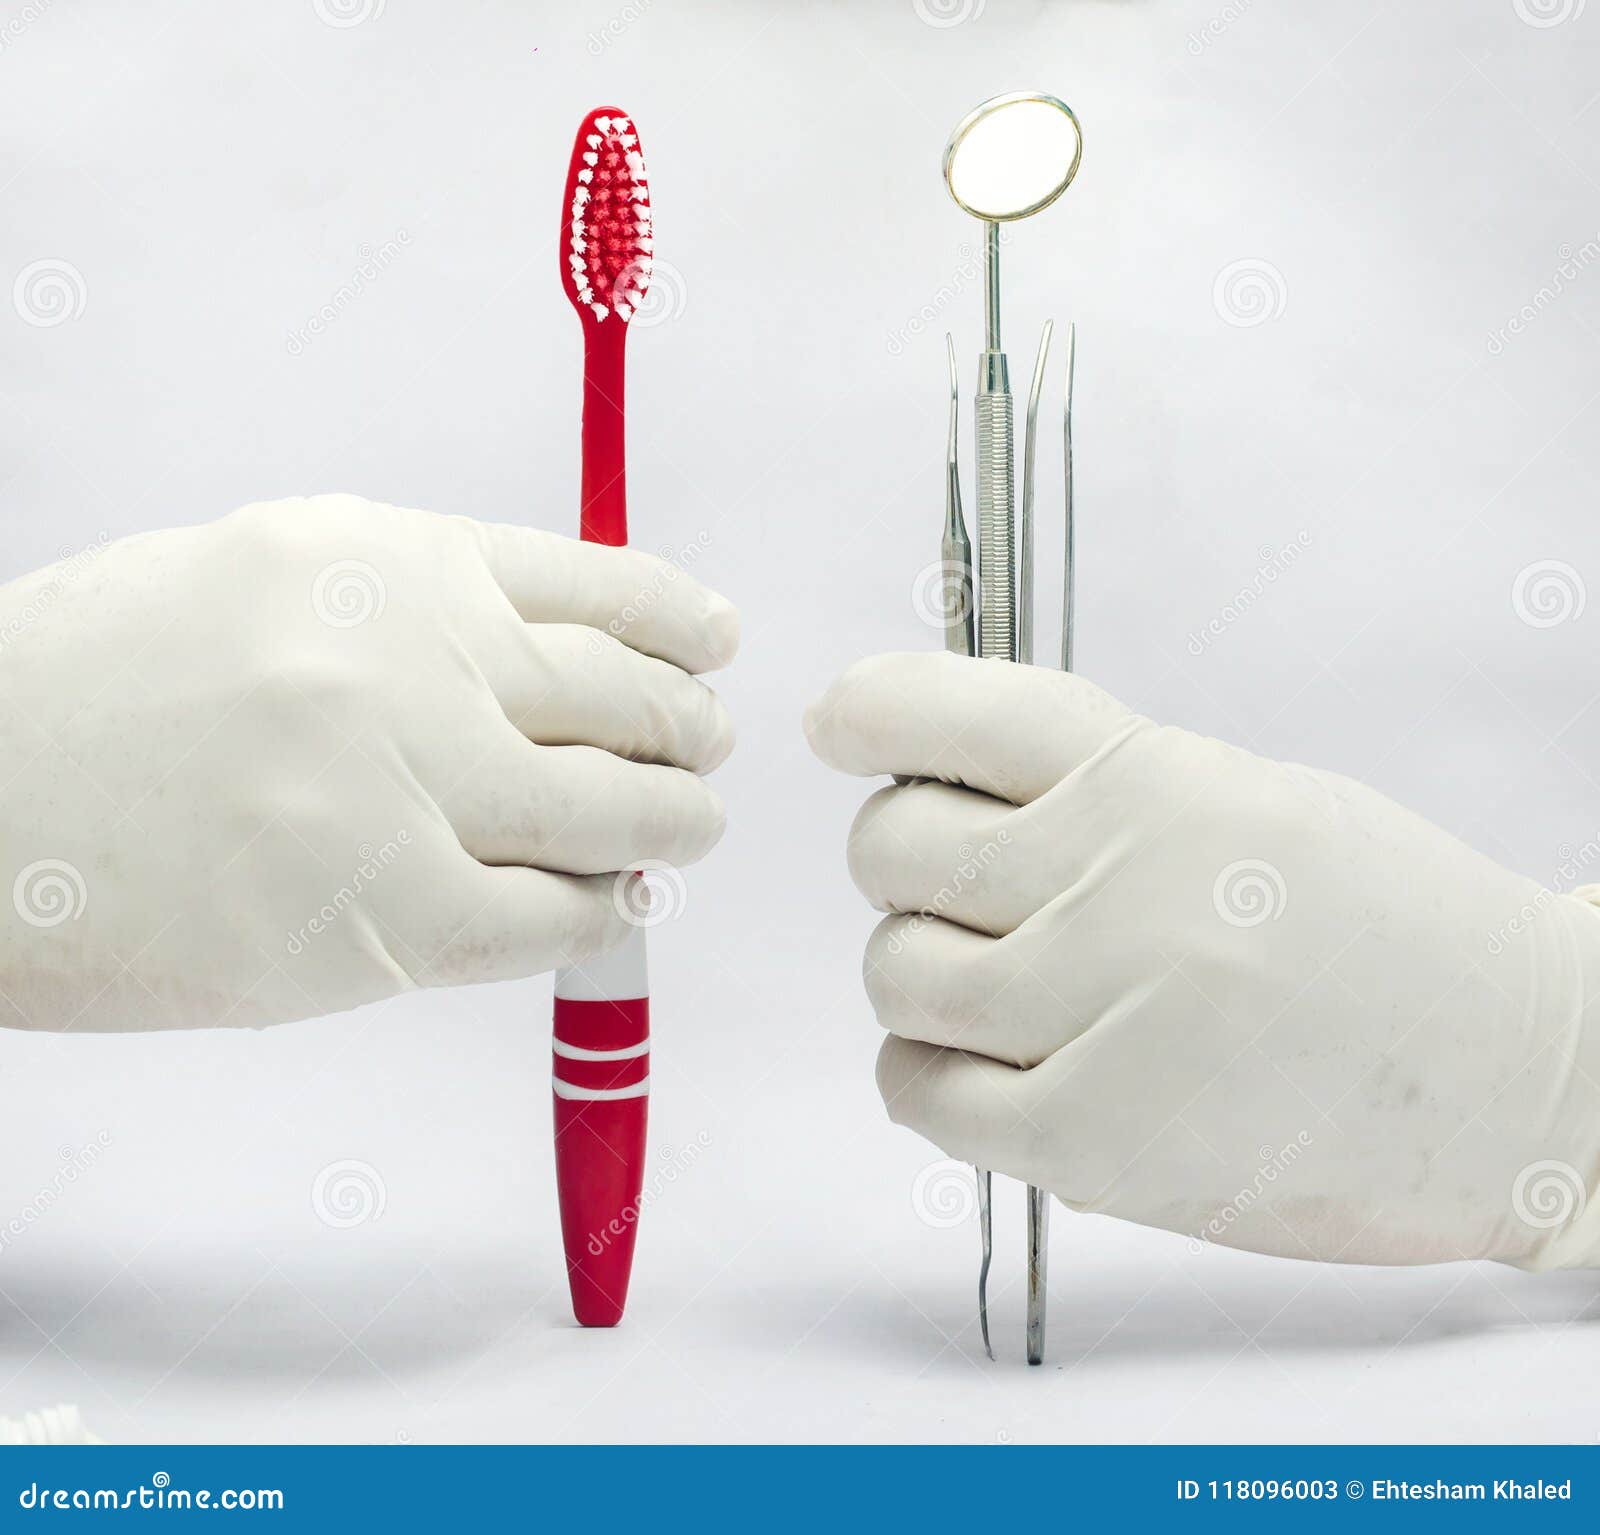 Hållande tand- spegel- och sond- och tweezeramdtandborste som isoleras i vit bakgrund. Hållande tand- spegel och sond och pincett och tandborste som isoleras i vit bakgrund